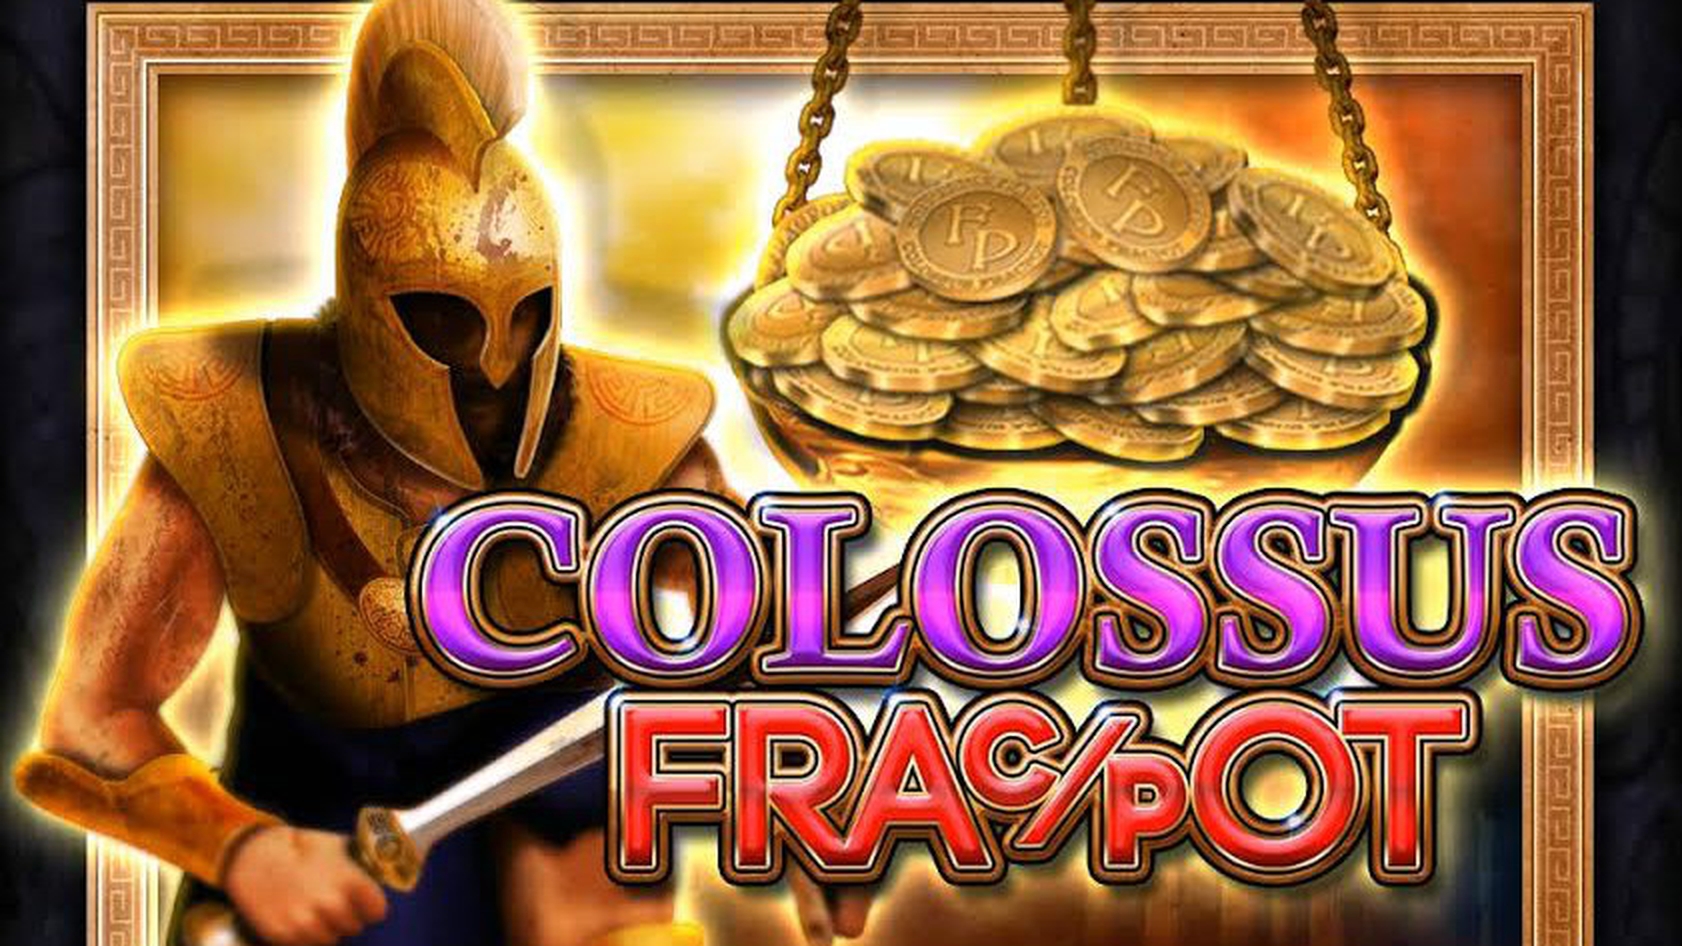 Colossus Fracpot demo